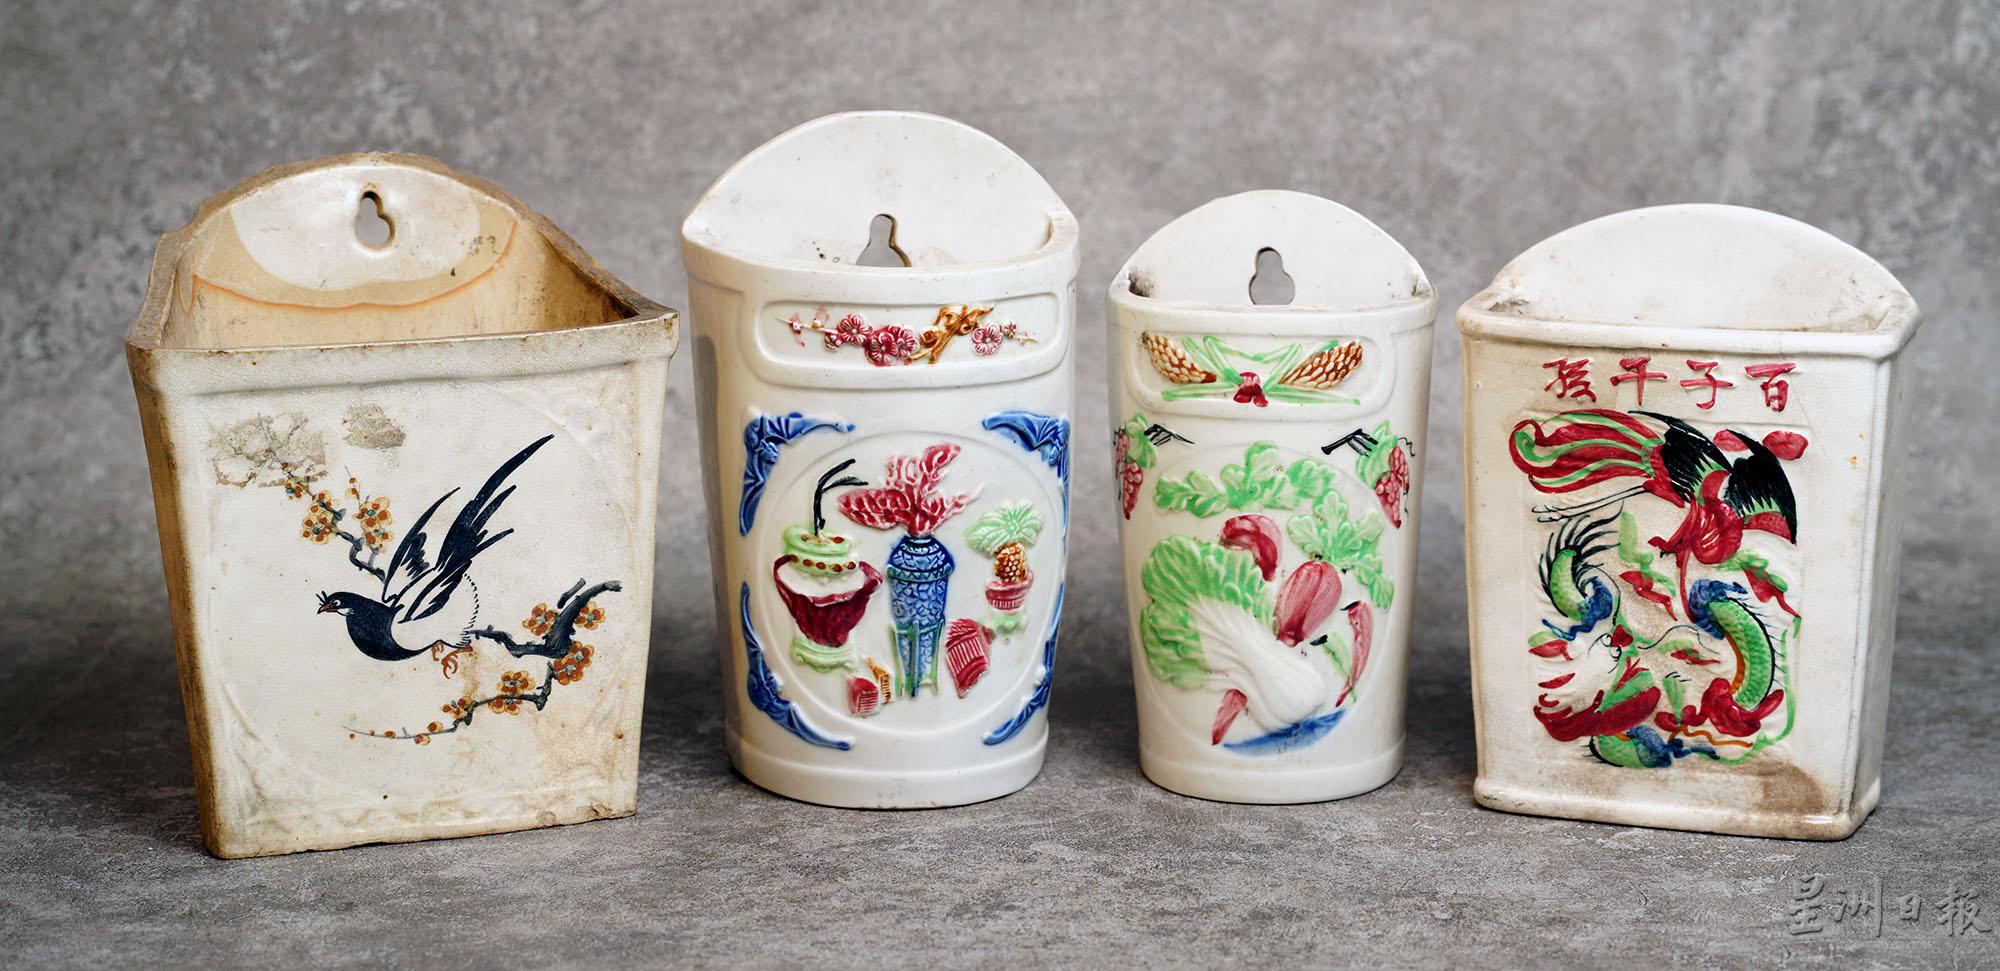 传统筷子筒以花鸟的图案最为常见，寓意吉祥。

